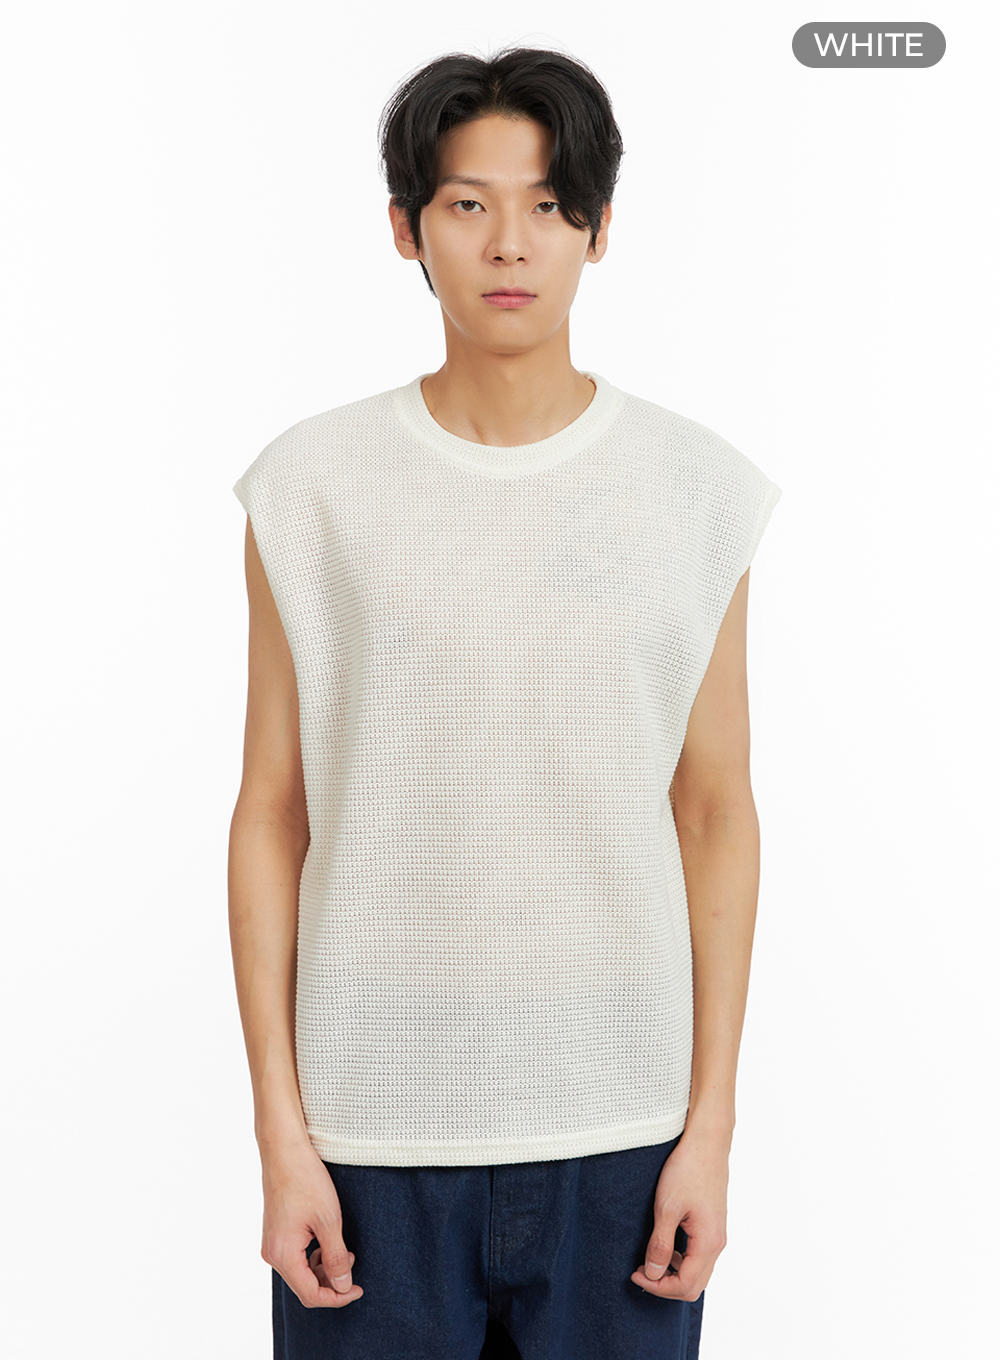 mens-knit-vest-ia402 / White